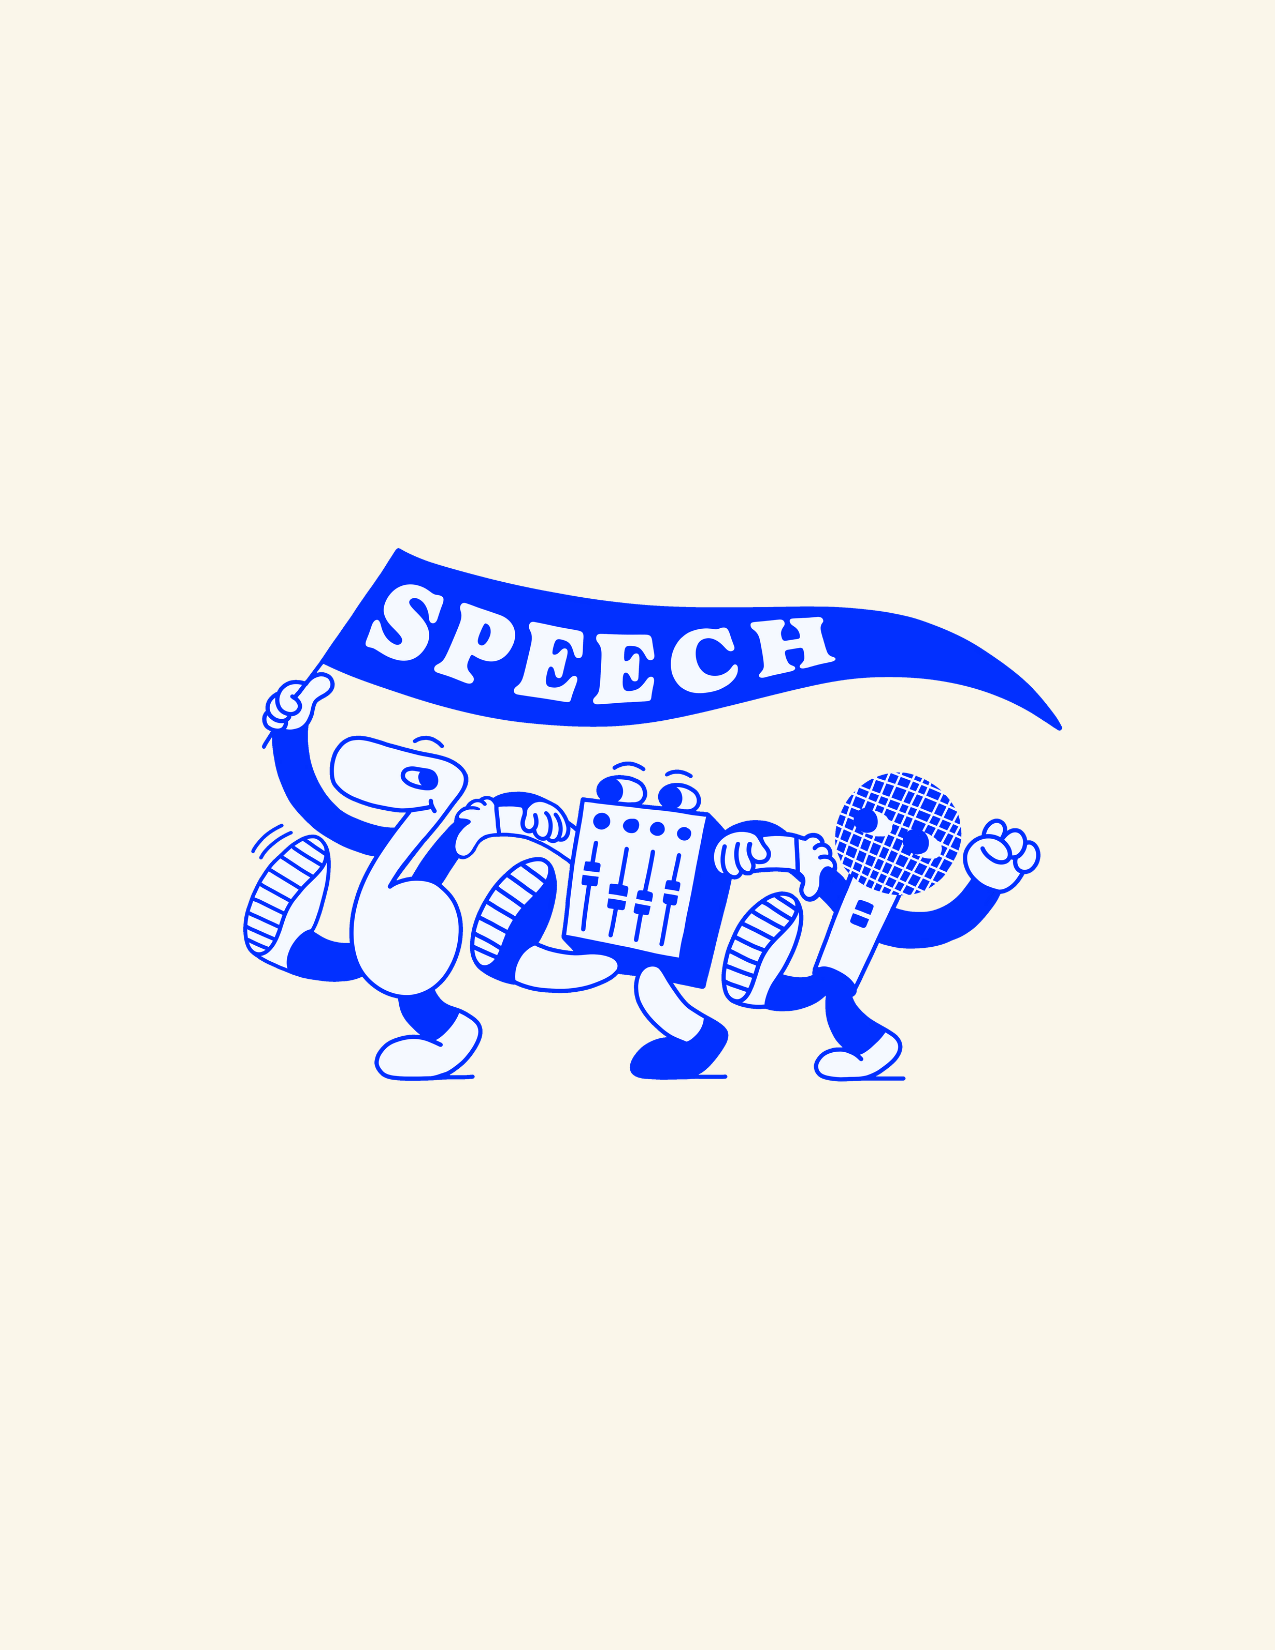 Speech Workshops - EP Speech Vol.3 booklet